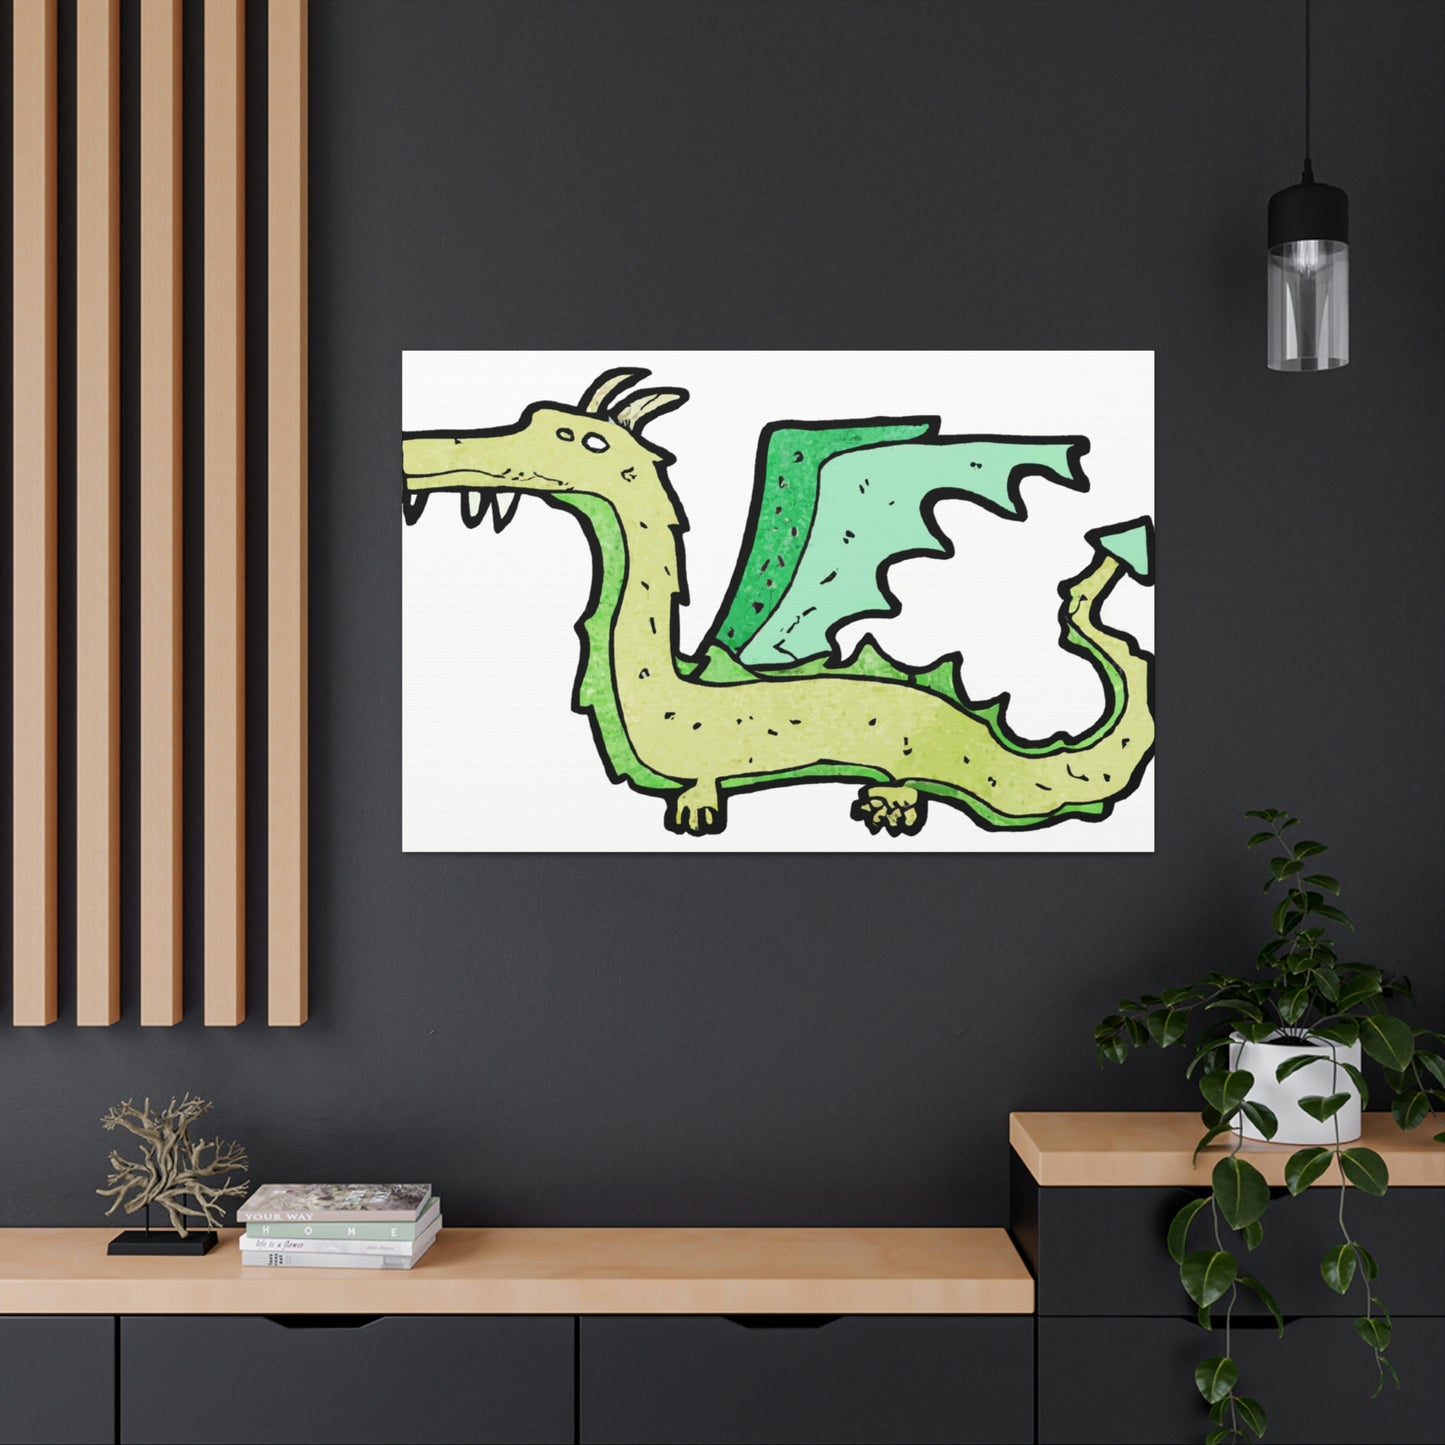 Simon the Scourge - Dragon Collector Canvas Wall Art